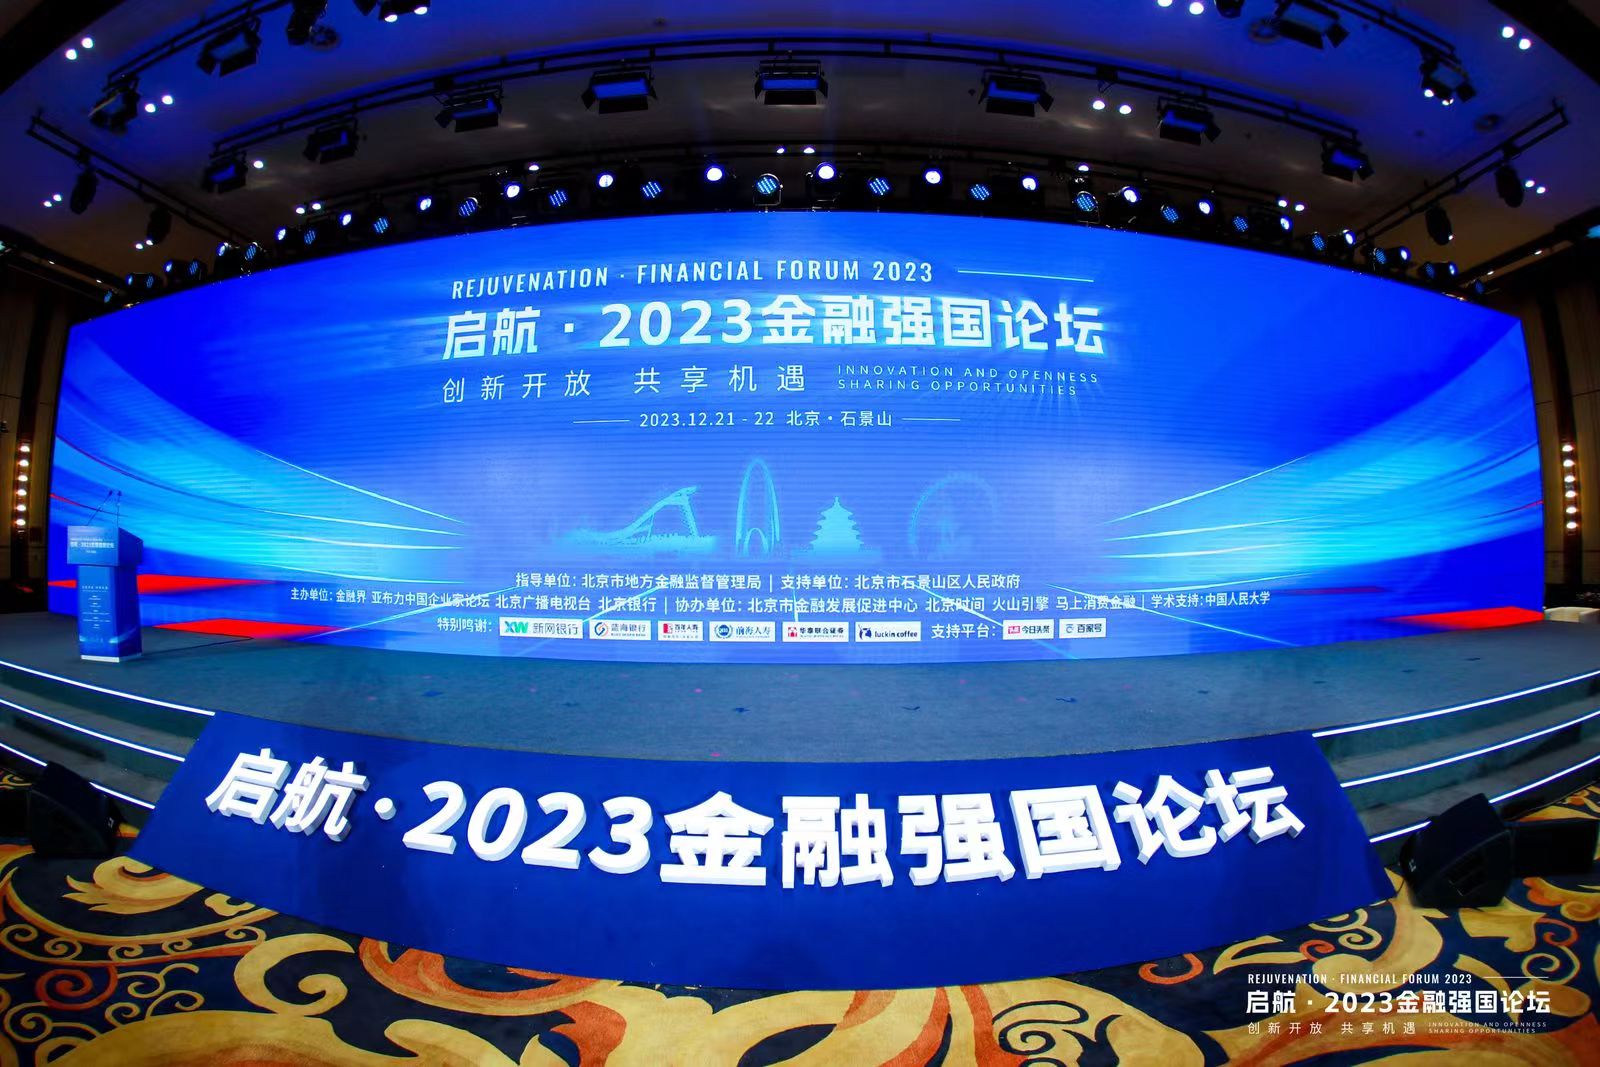 中亦科技受邀參加“啟航·2023 金融強國論壇”